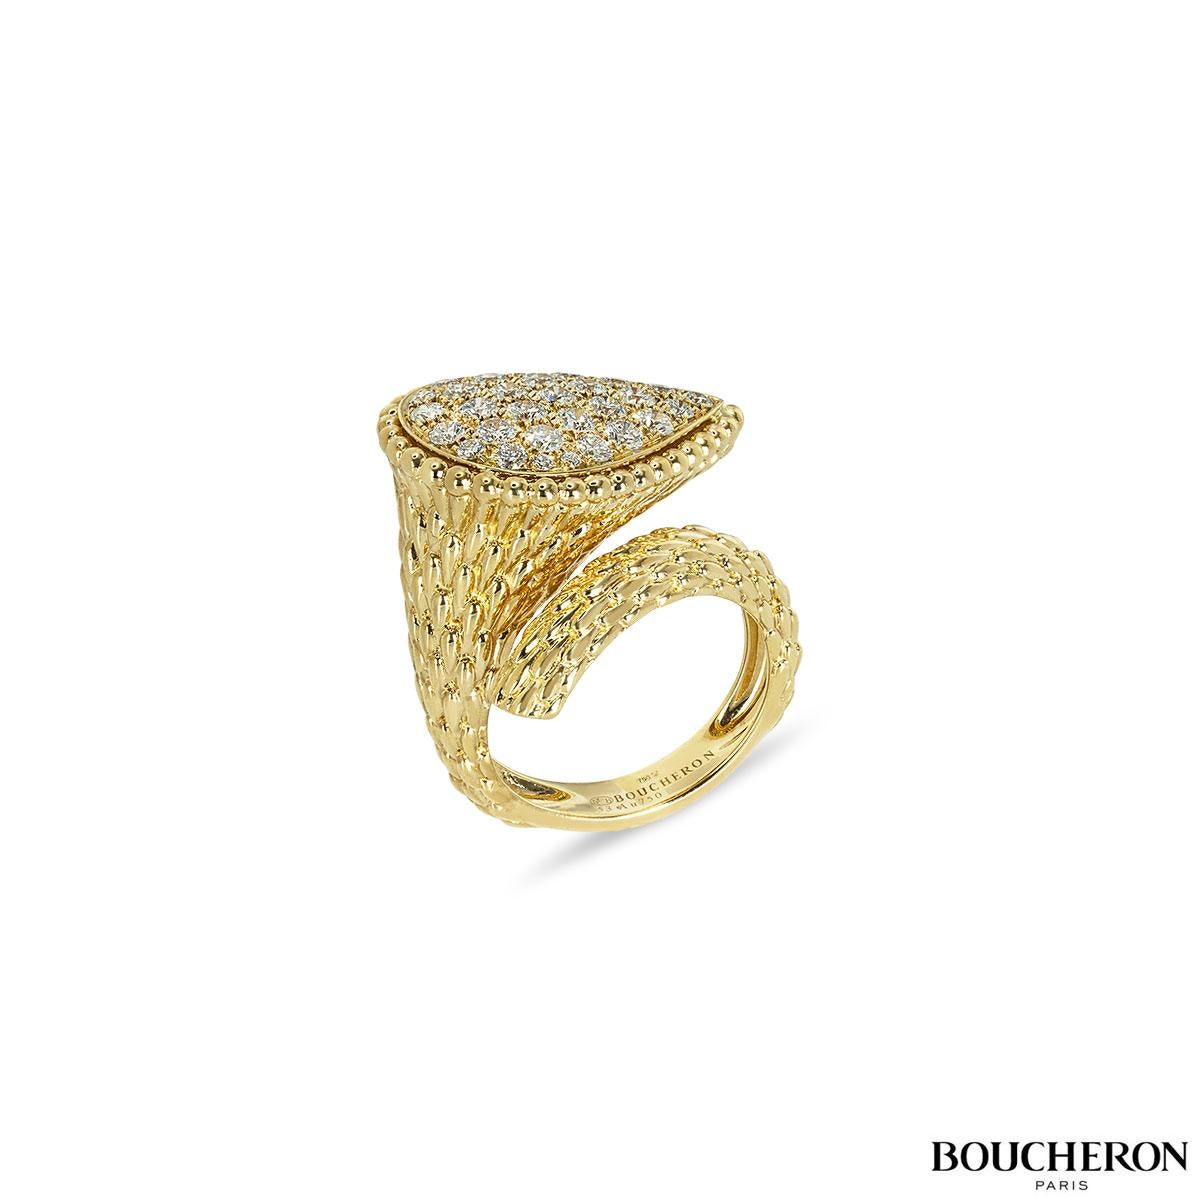 Eine atemberaubende Boucheron aus 18k Gelbgold aus der Serpent Bohème Kollektion. Der Ring besteht aus einem strukturierten Ring, der zu einem großen Tropfenmotiv mit Perlen am äußeren Rand führt. Es sind 32 runde Diamanten im Brillantschliff mit